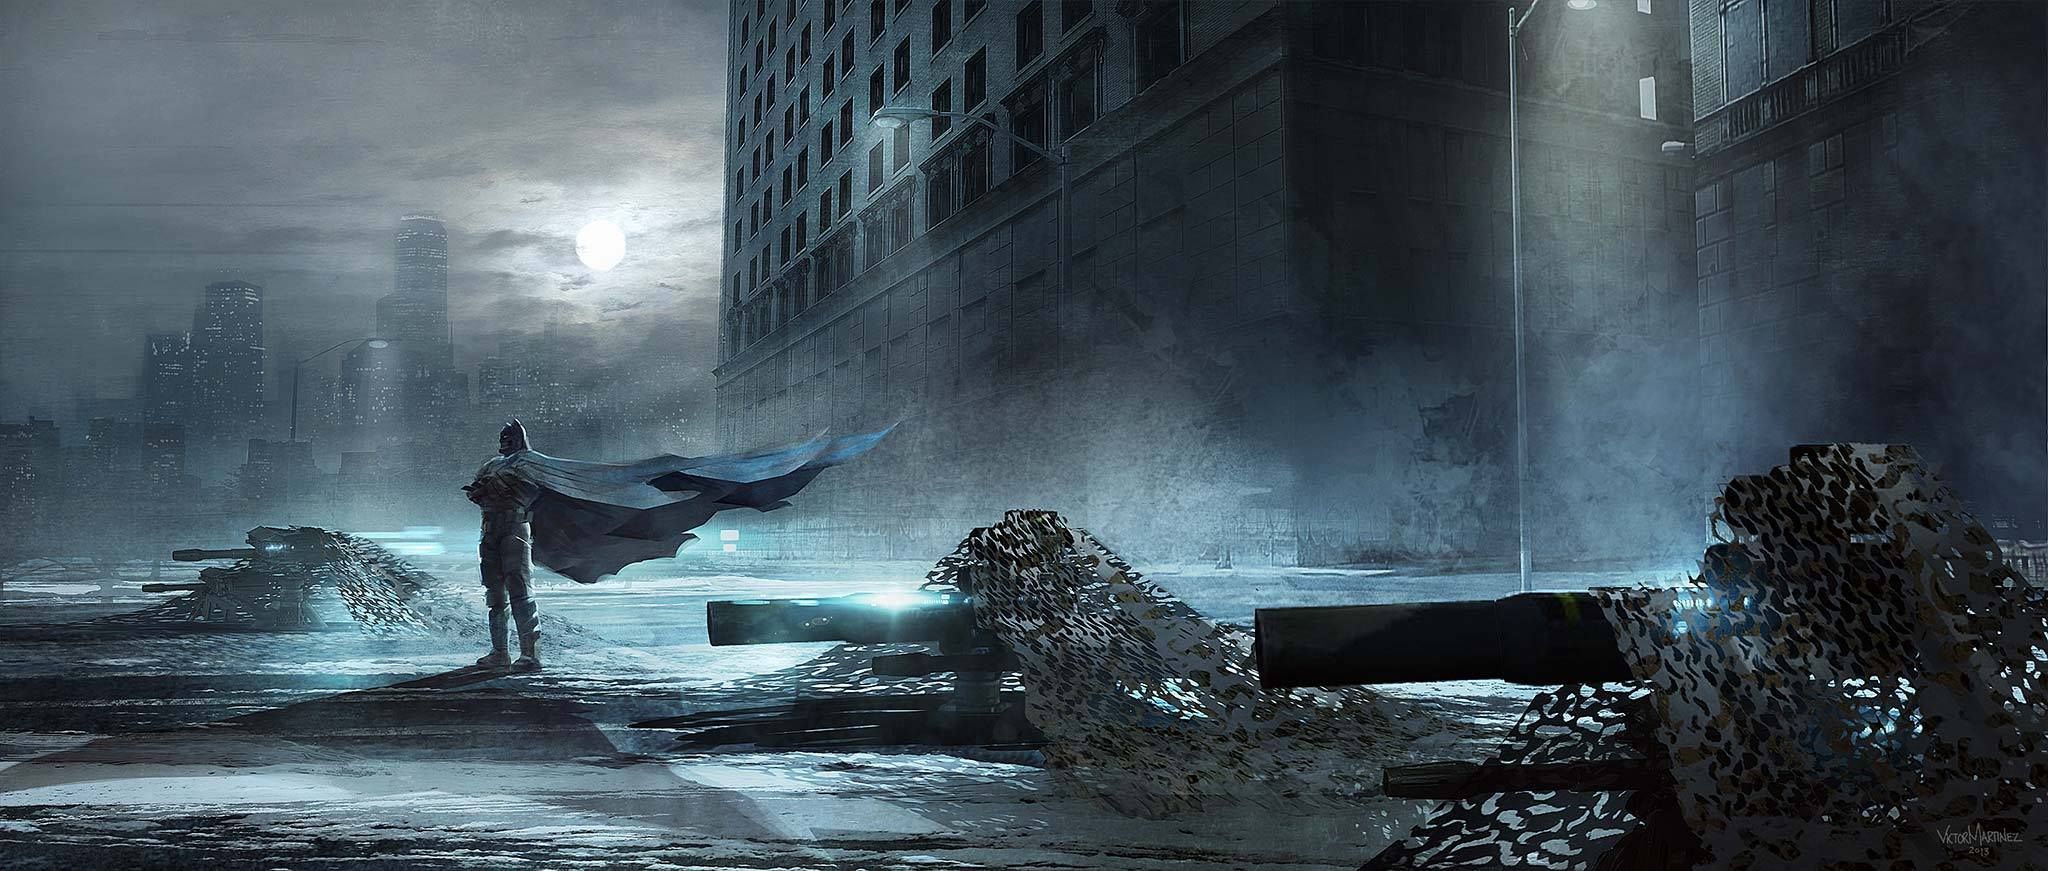 Batman V Superman concept art featuring Ben Affleck's Batman